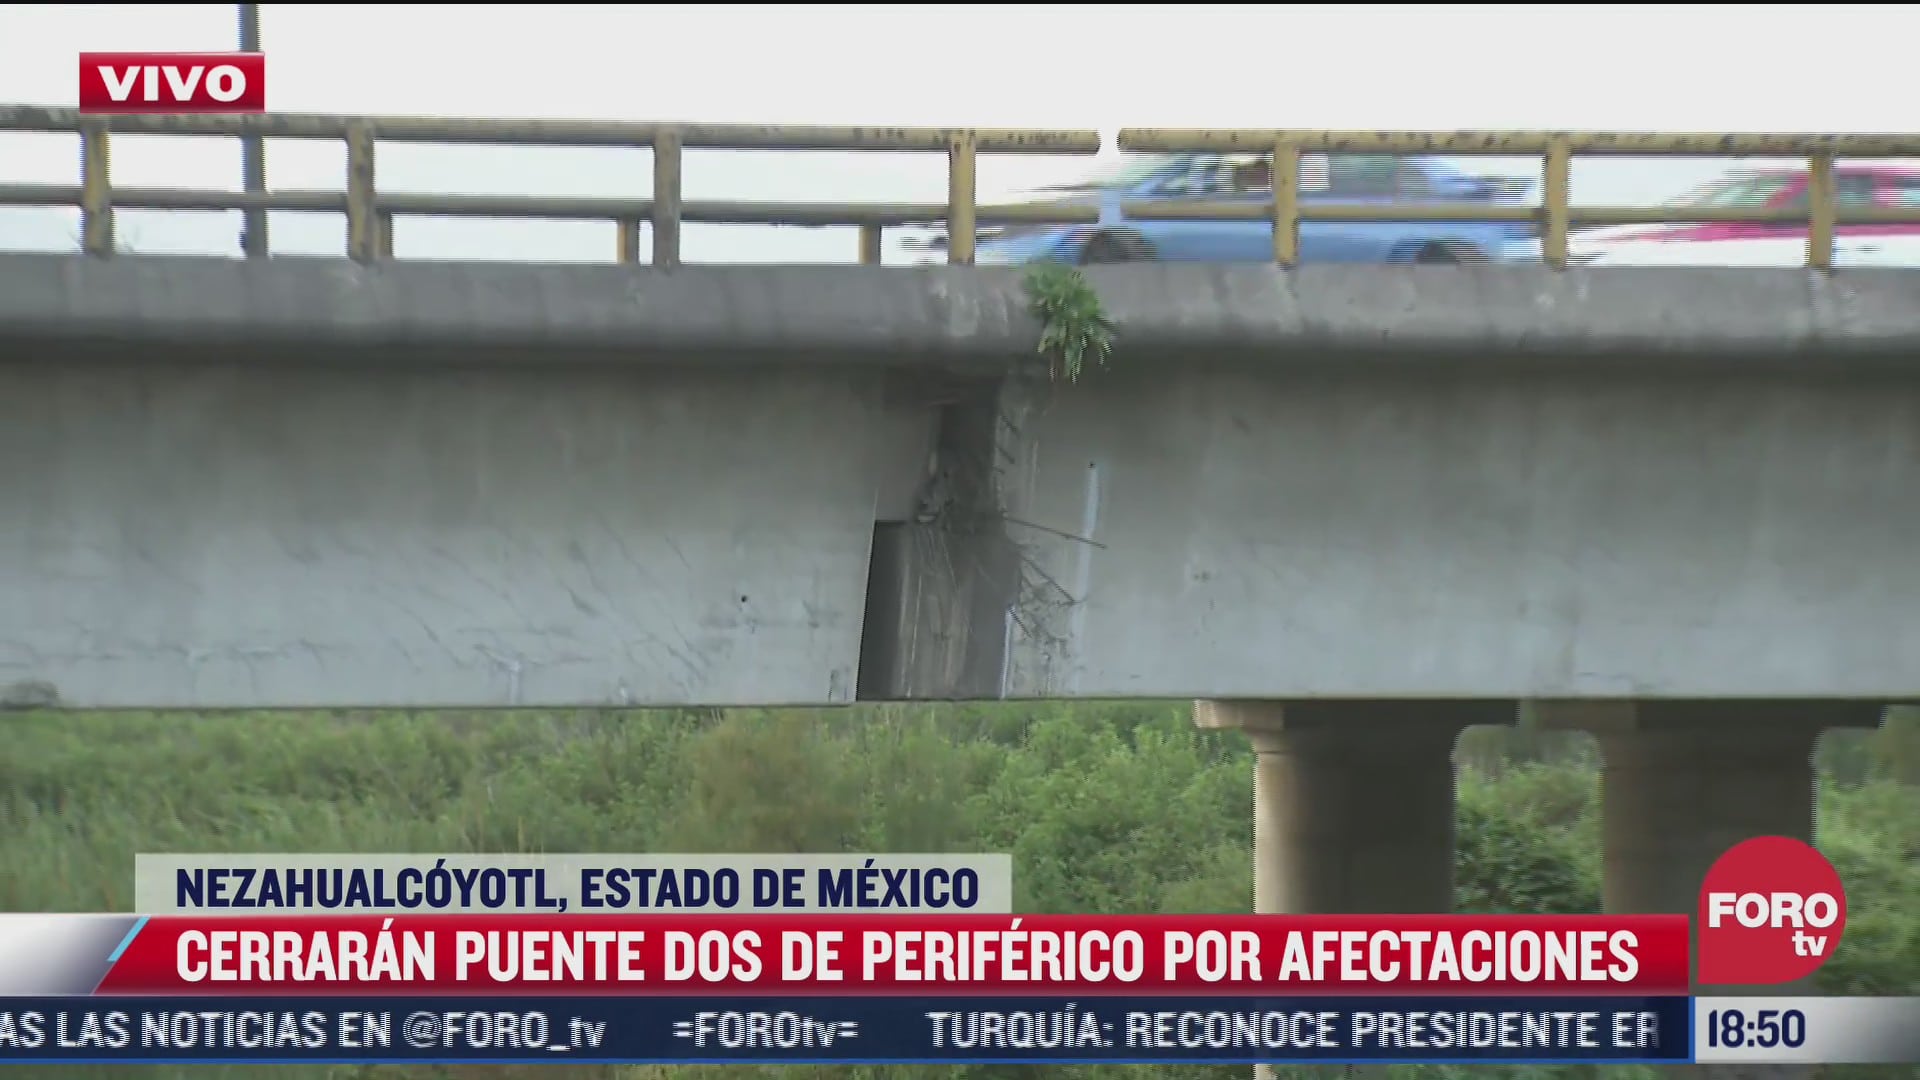 cerraran puente dos de periferico por afectaciones en nezahualcoyotl